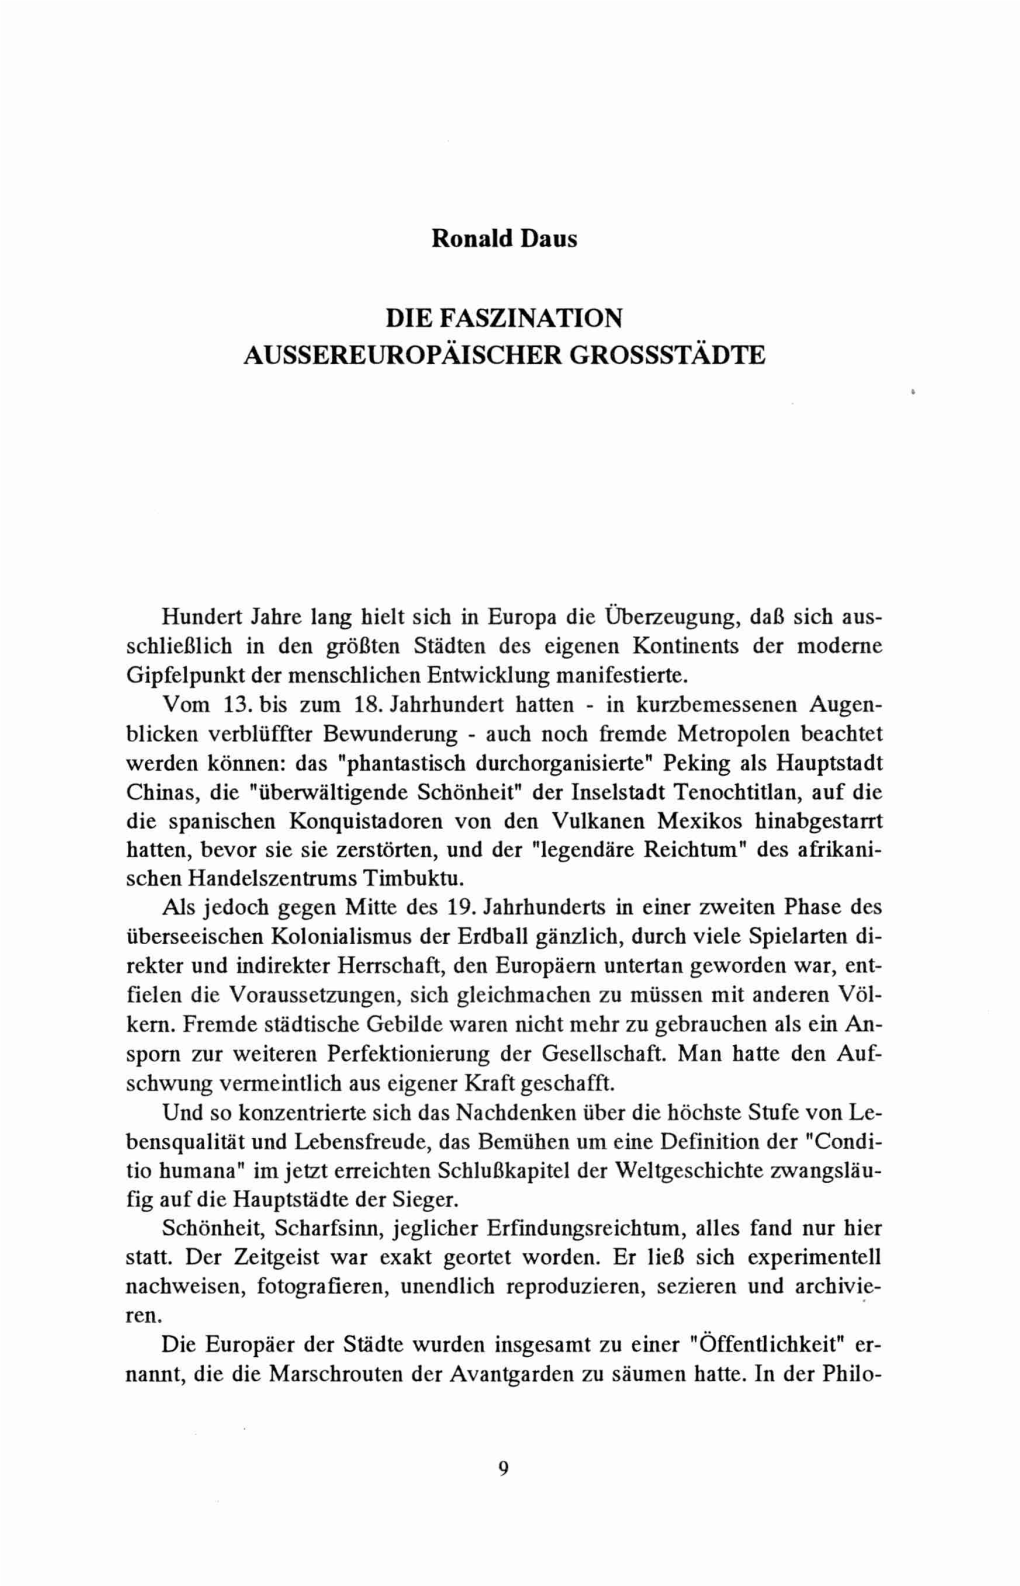 Ronald Daus DIE FASZINATION AUSSEREUROPÄISCHER